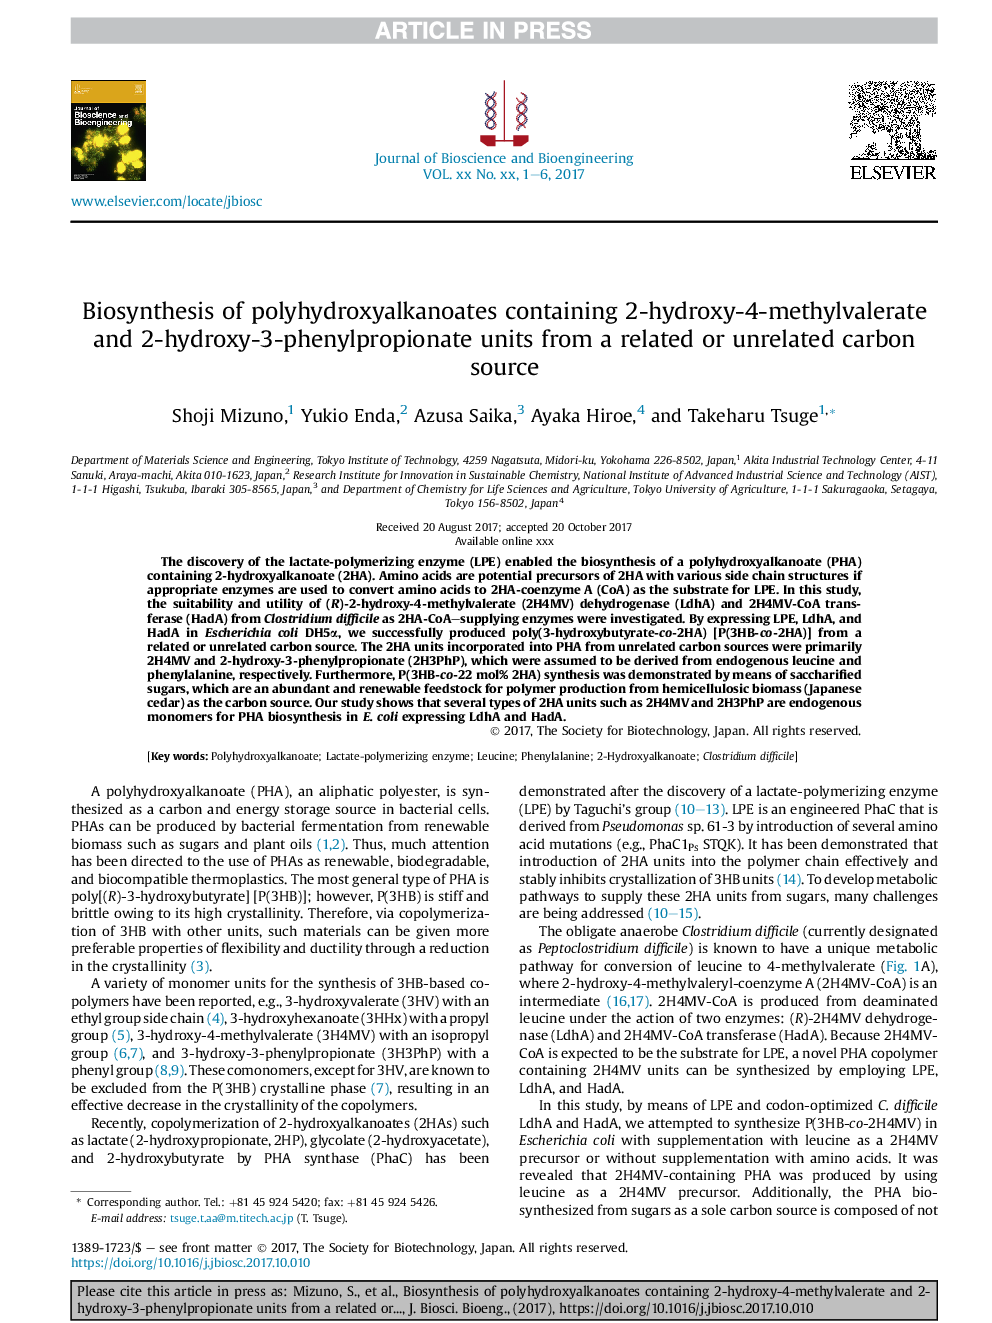 بیوسنتز پلی هیدروکسی آلکانیات ها حاوی واکنش های 2-هیدروکسی 4-متیل والرات و 2-هیدروکسی-3-فنیل پروپیونات از یک منبع کربن مرتبط یا غیر مرتبط 